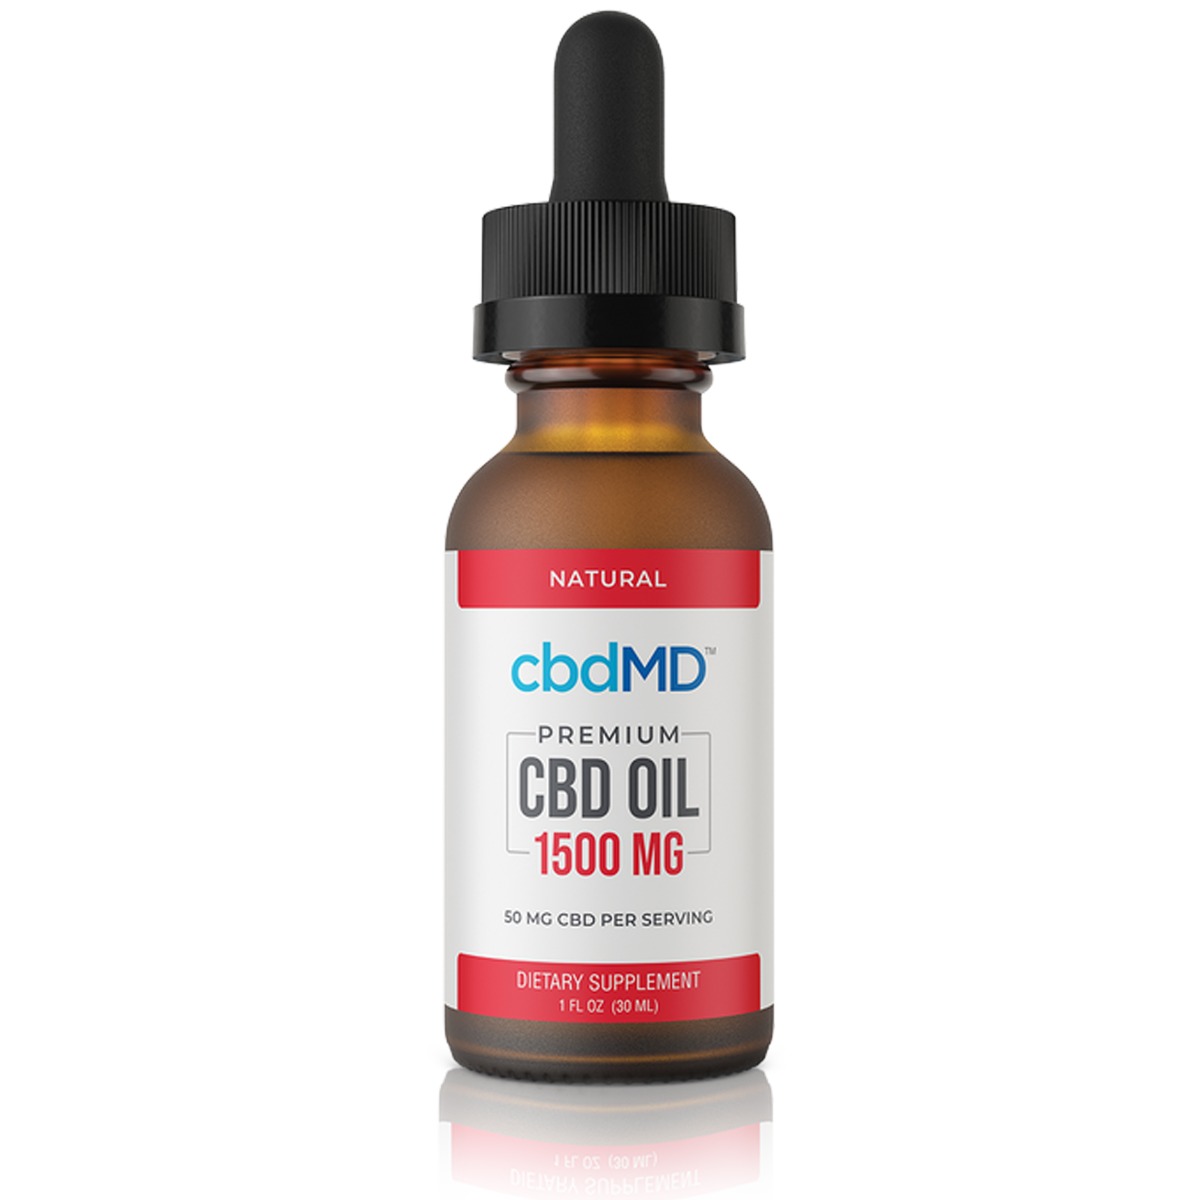 cbdMD Premium CBD Oil Broad Spectrum Natural 30ml